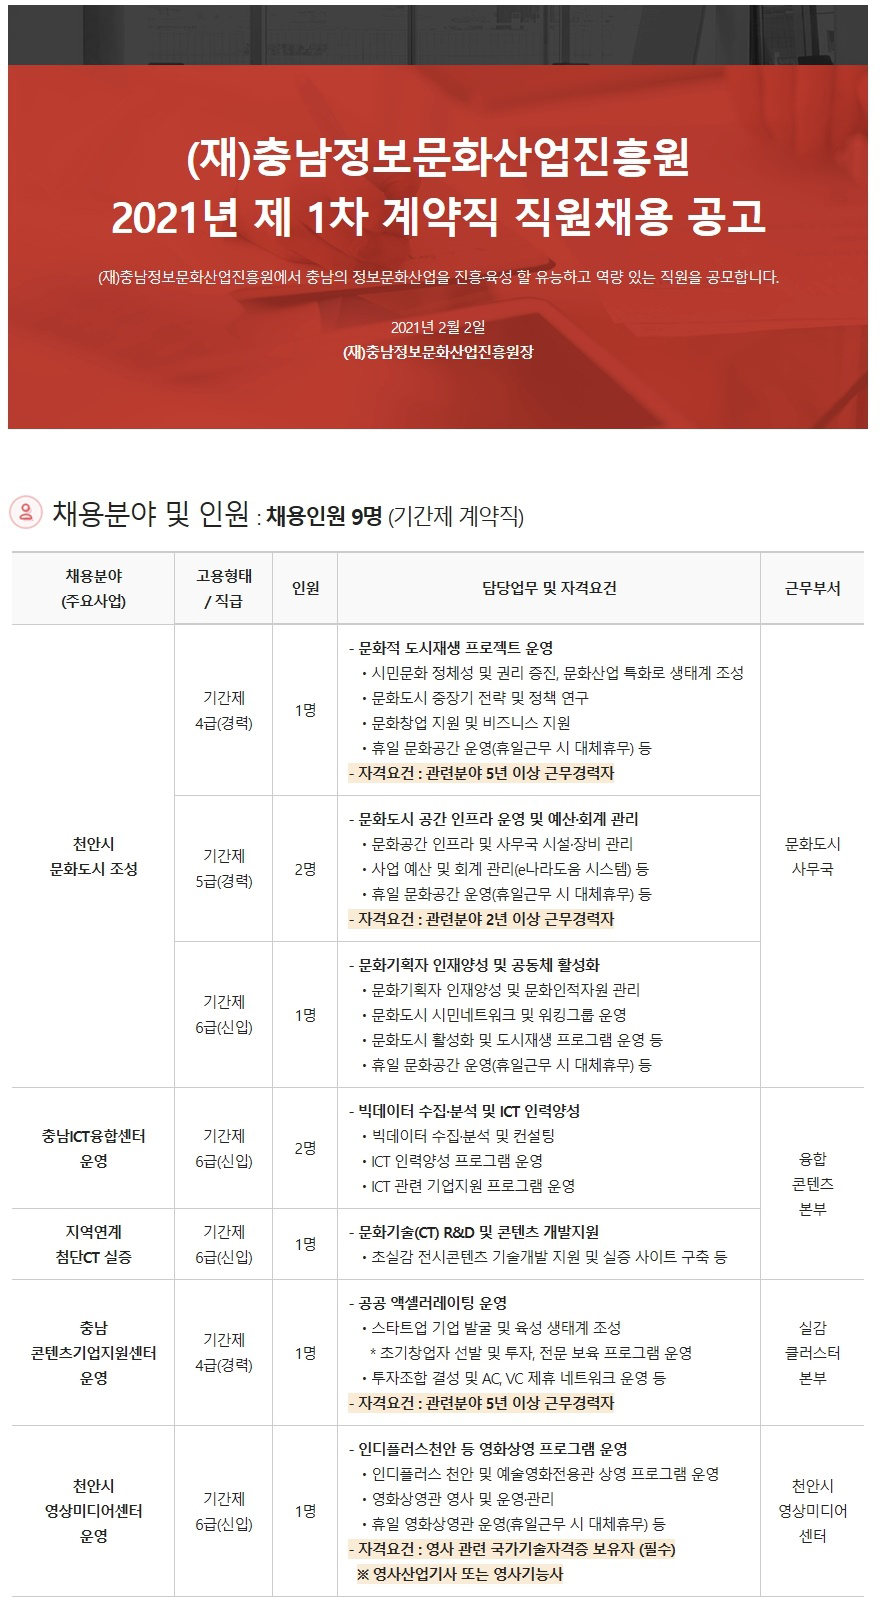 (재)충남정보문화산업진흥원 2021년 제1차 계약직 직원채용 공고